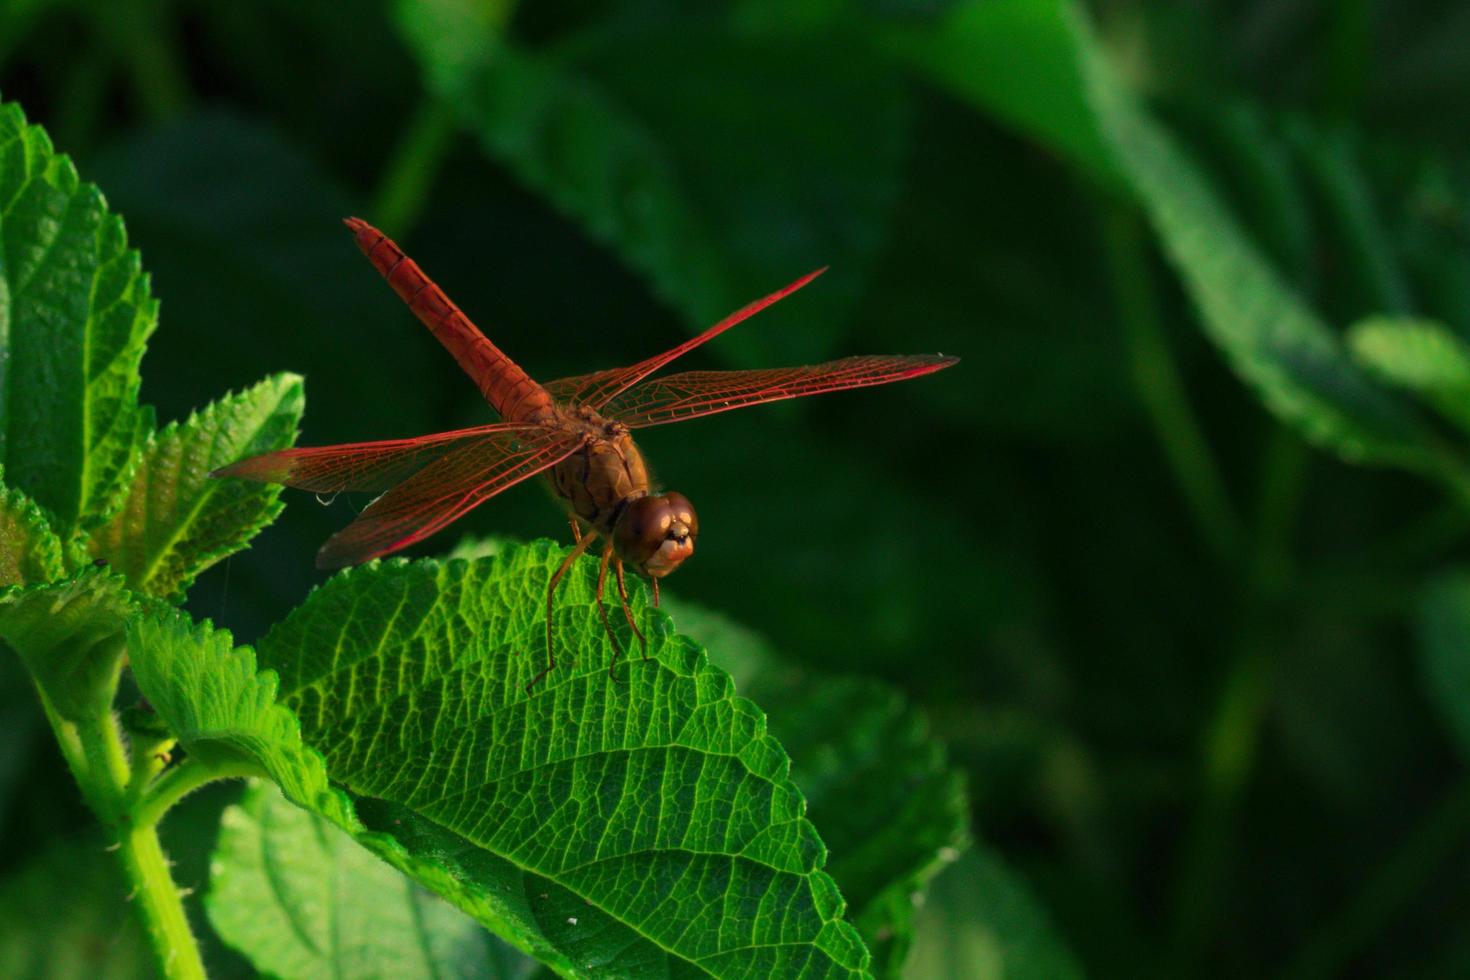 hermosa libélula roja muestra detalles de alas en una hoja verde como fondo natural el día del sol. insecto animal en la naturaleza. libélula roja de primer plano. indicador de calidad del agua. concepto conmemorativo. salvar mundo foto